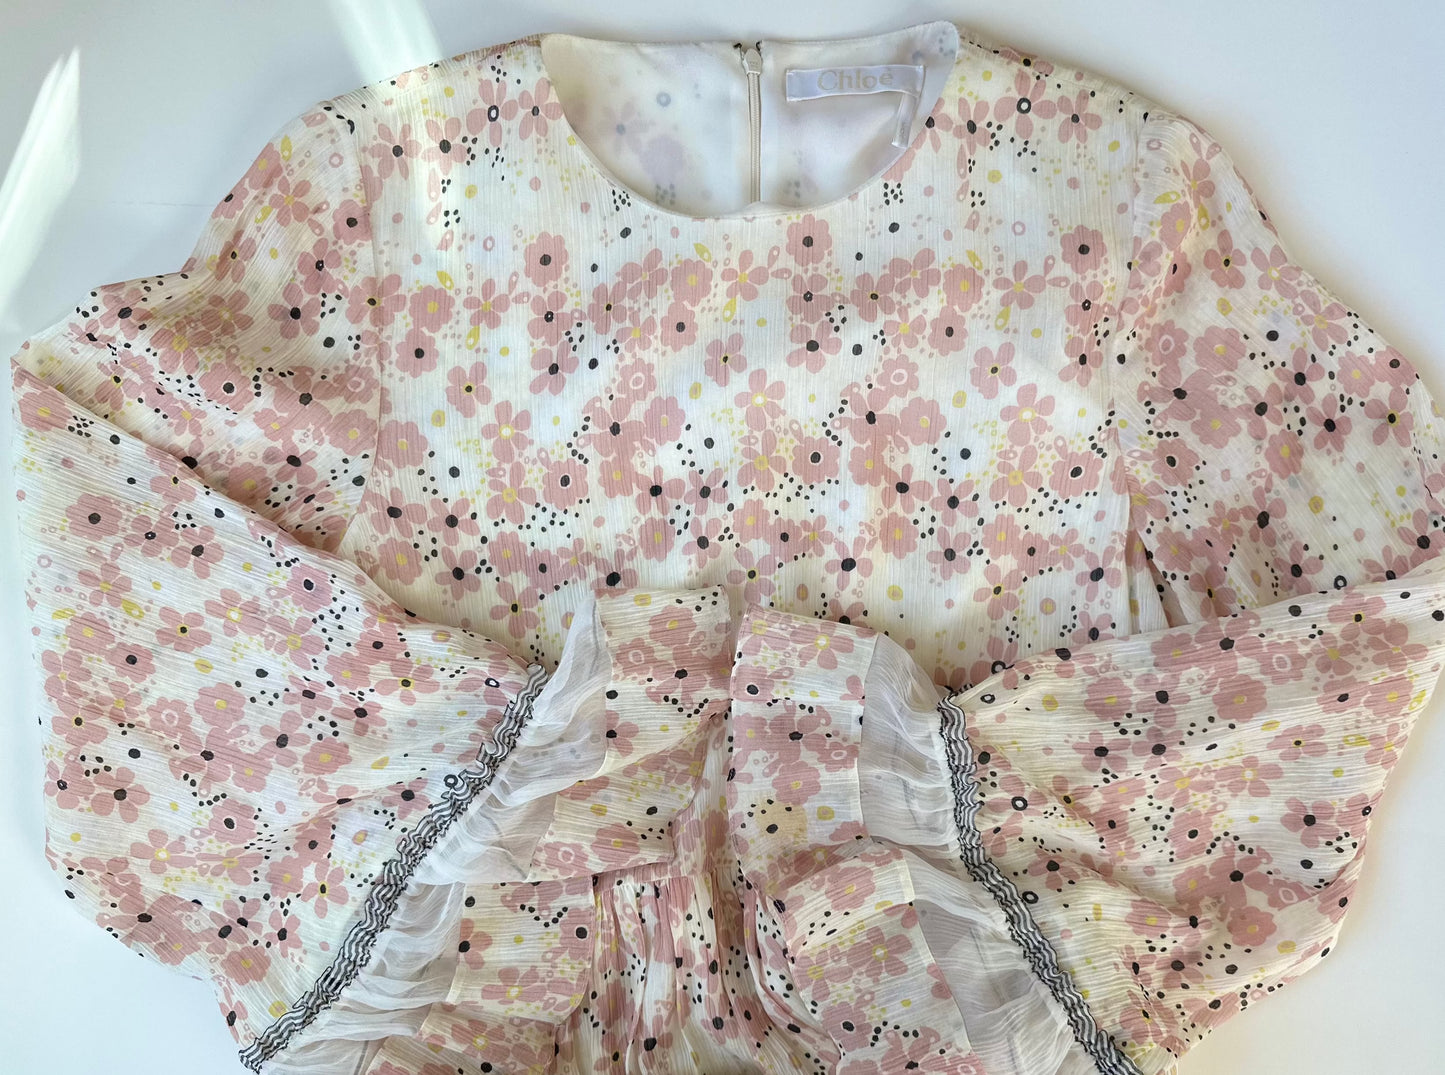 Chloe 2017 Pink Floral Print Dress Size 38